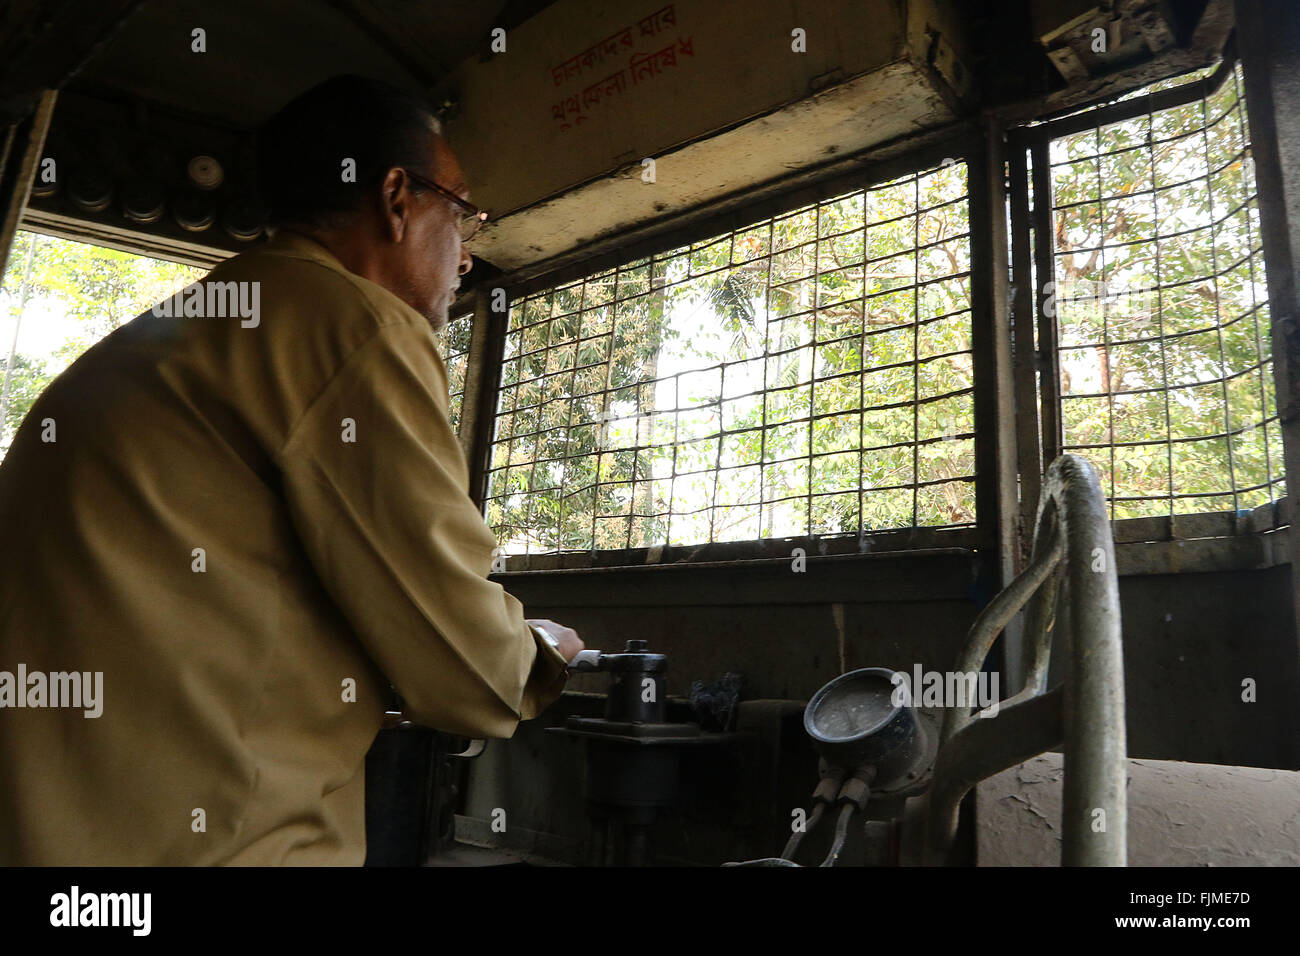 India, 19 febbraio 2016. Tram unità driver di un esecutivo unico vano tram nella parte orientale della città indiana di Kolkata .Foto di Pal Foto Stock